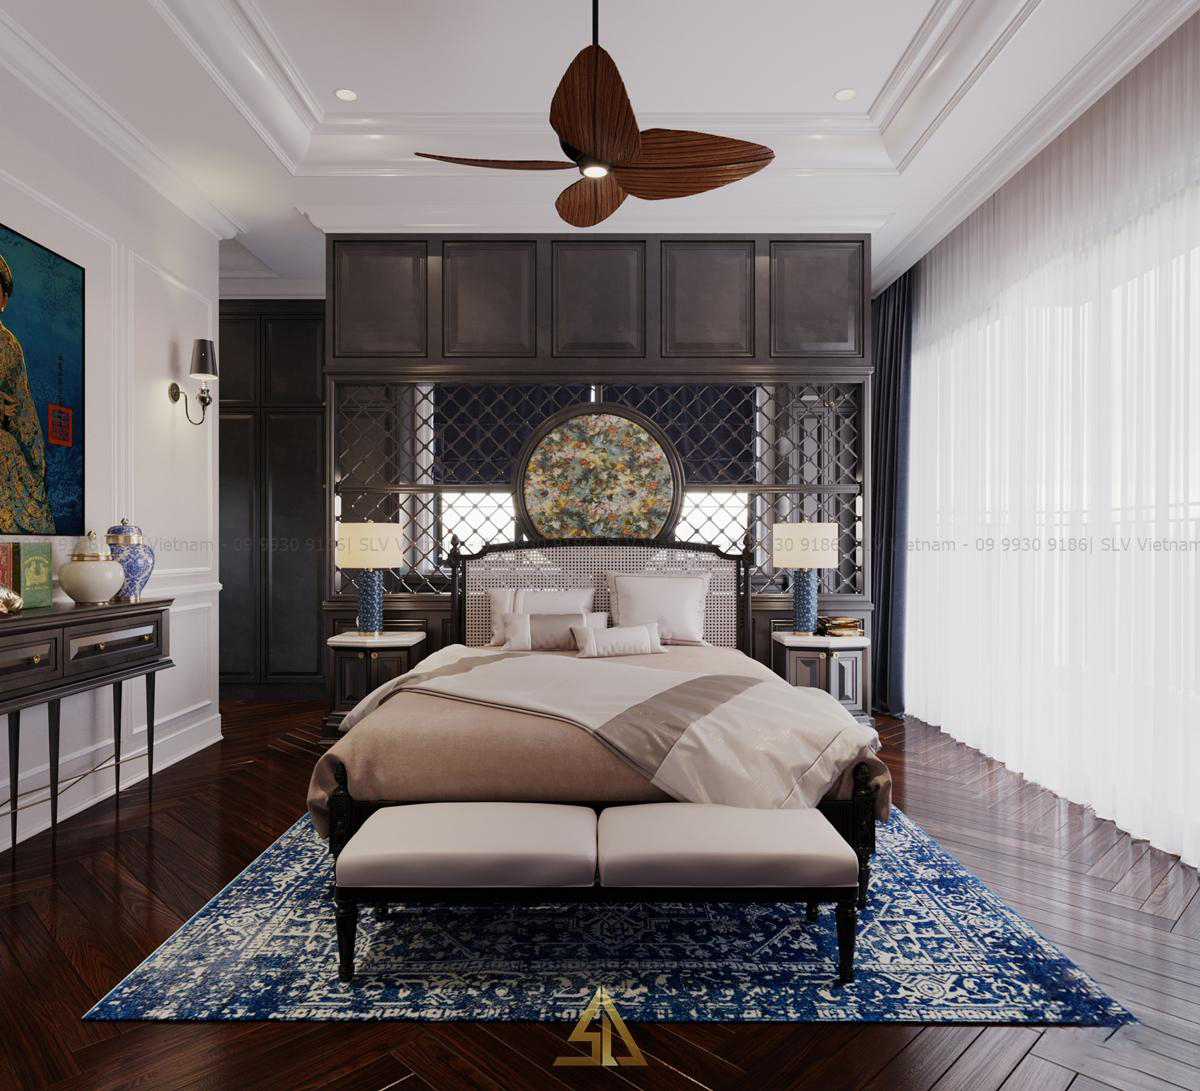 Phòng ngủ phong cách Đông Dương đẹp mắt (Nguồn ảnh: SLV Vietnam)